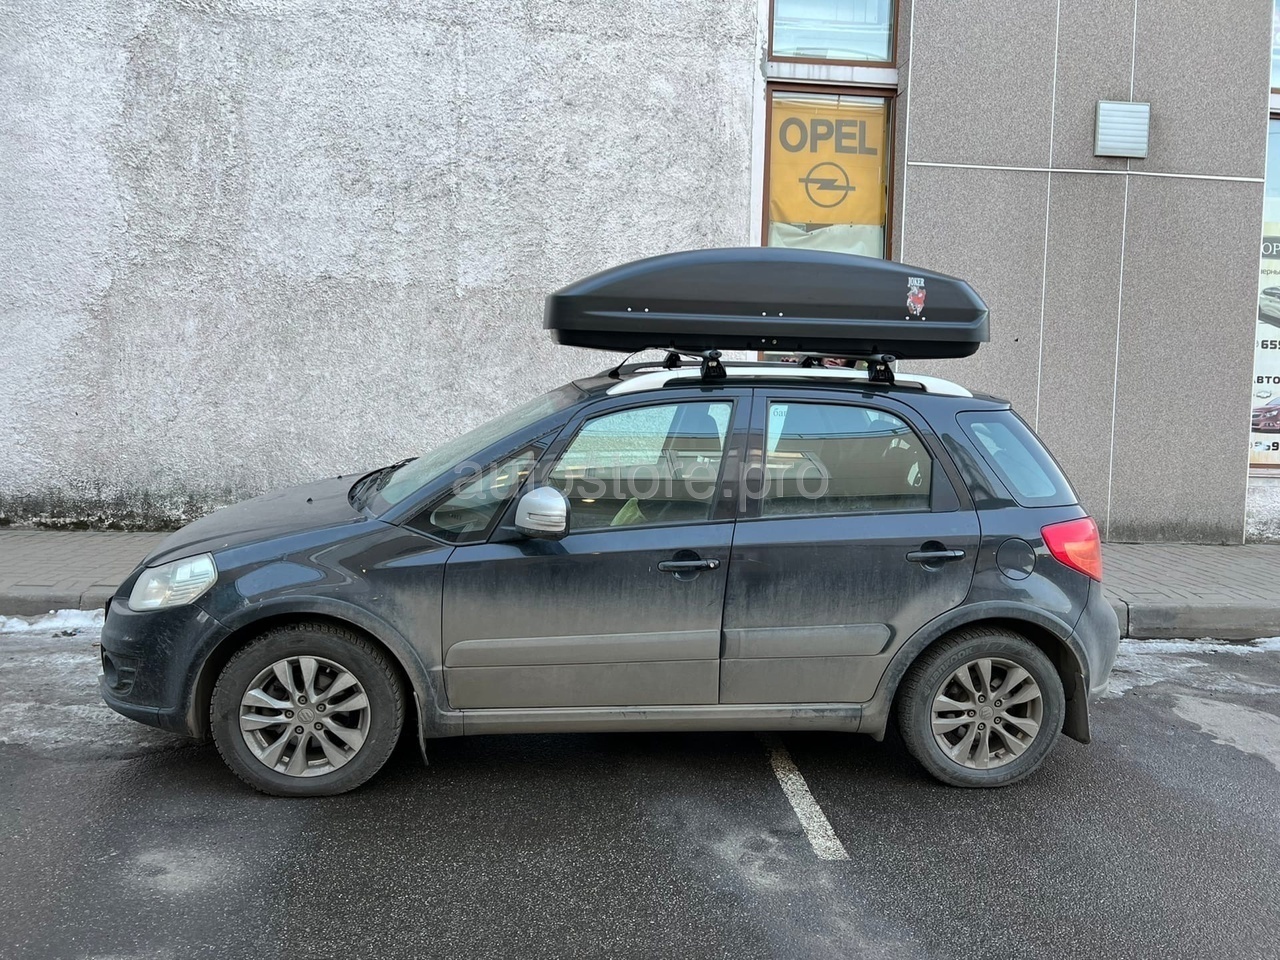 багажный короб на крышу автомобиля